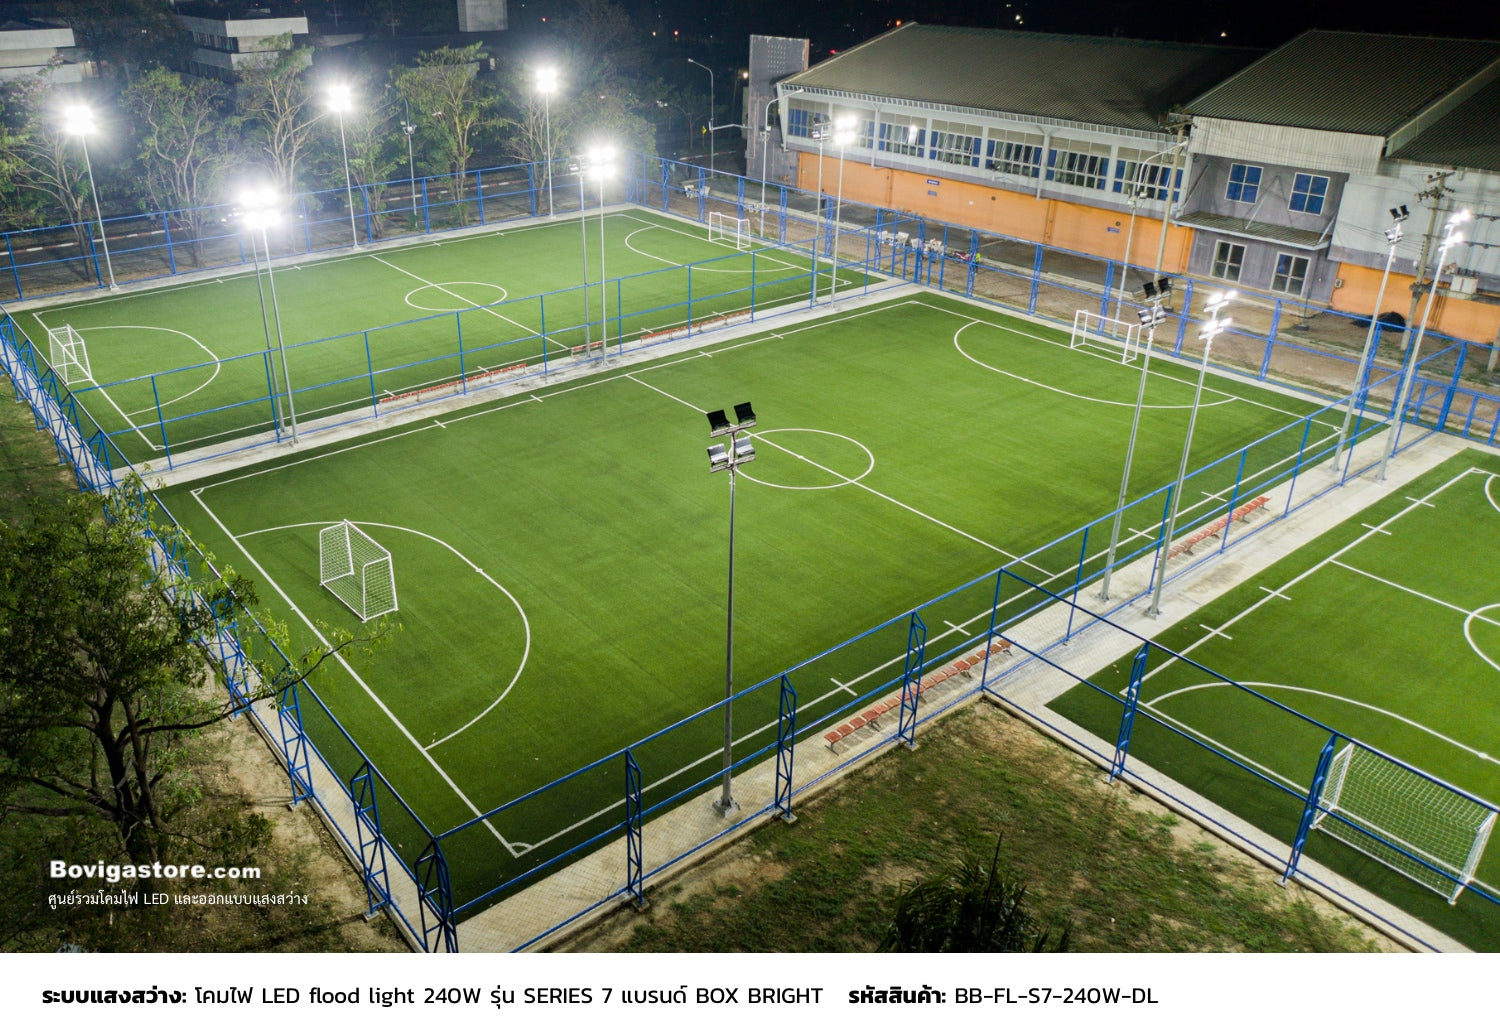 เลนส์ช่วยปรับทิศทางของแสงสว่างให้ส่องลงบนพื้นสนามฟุตบอลได้อย่างมีประสิทธิภาพ ลดการสูญเสียแสง